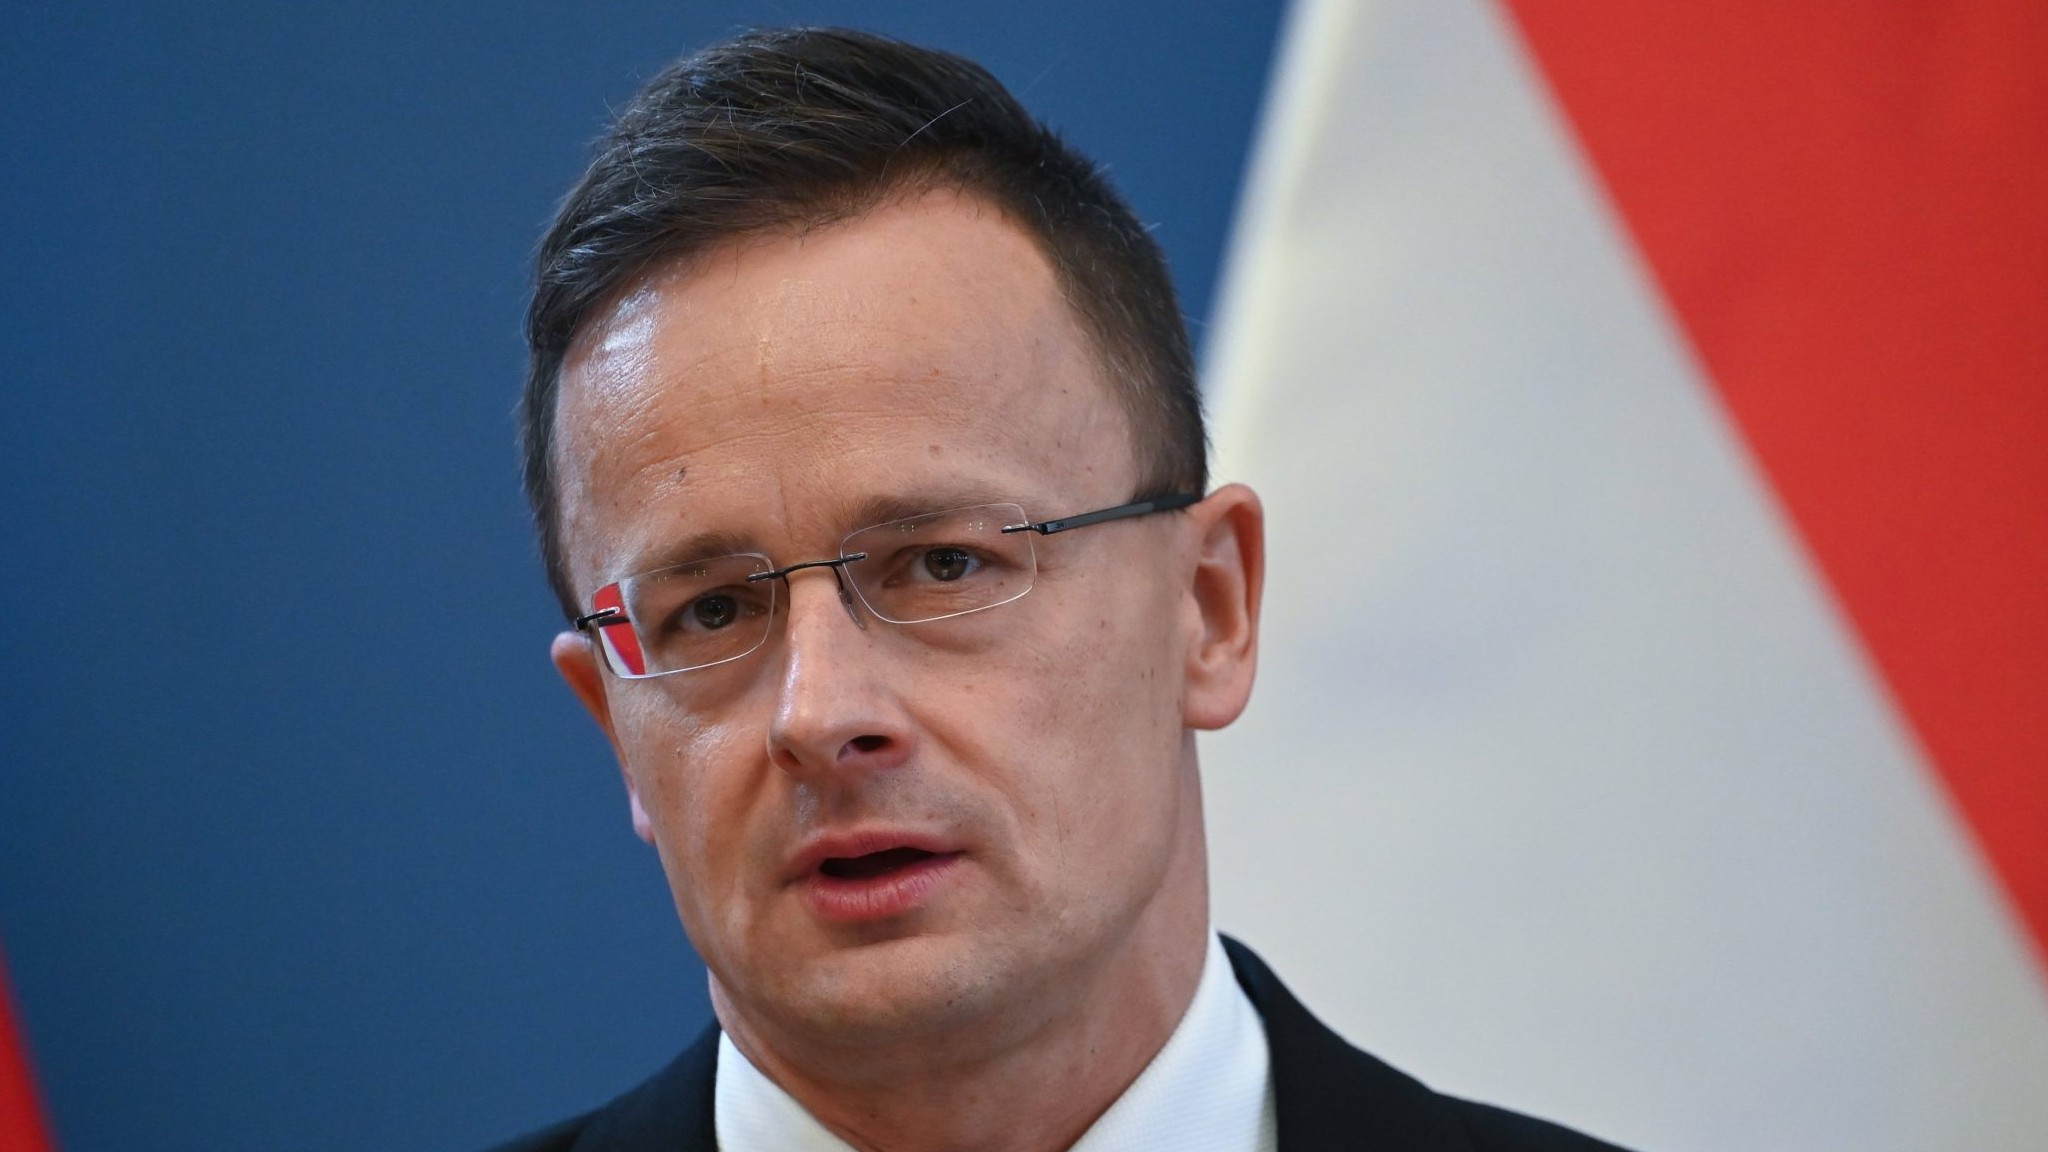 Hungary tỏ rõ quan điểm, nói biện pháp trừng phạt mới với Nga là 'nhạt nhẽo'